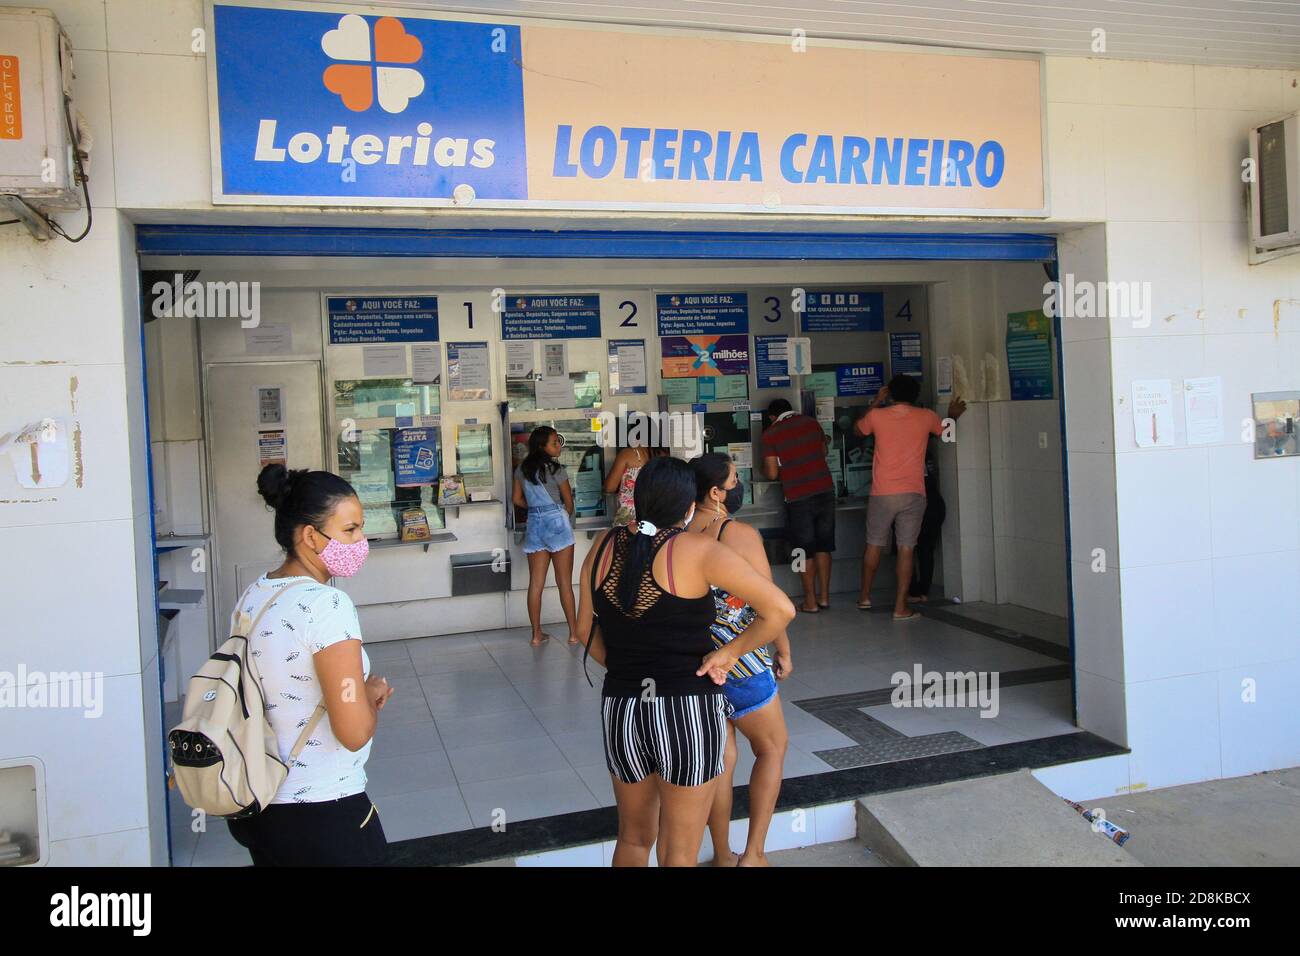 Lotérica do Riopreto Shopping está funcionando em horário especial